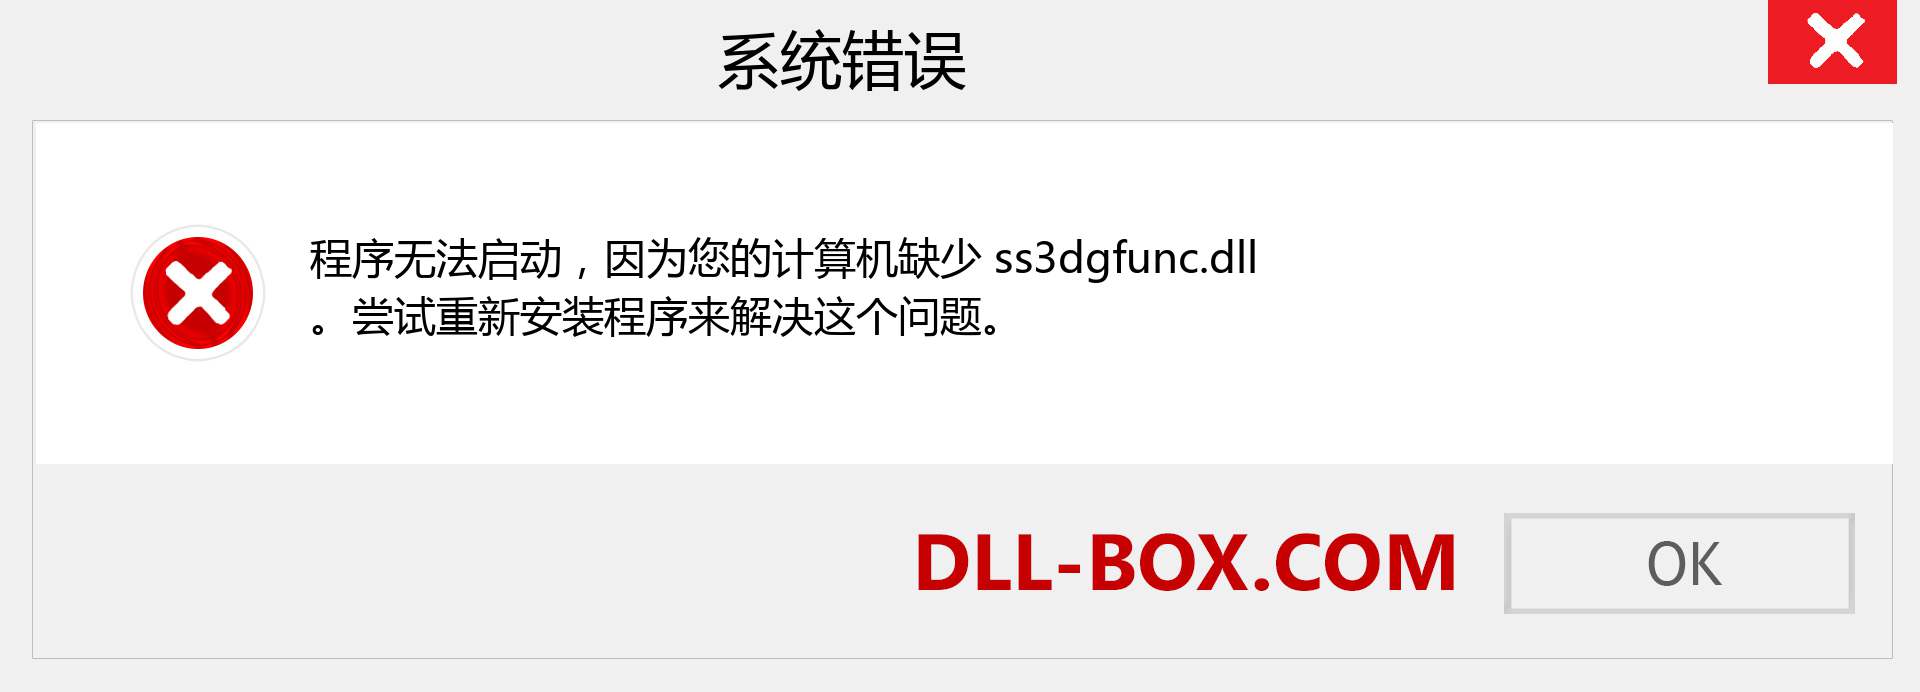 ss3dgfunc.dll 文件丢失？。 适用于 Windows 7、8、10 的下载 - 修复 Windows、照片、图像上的 ss3dgfunc dll 丢失错误